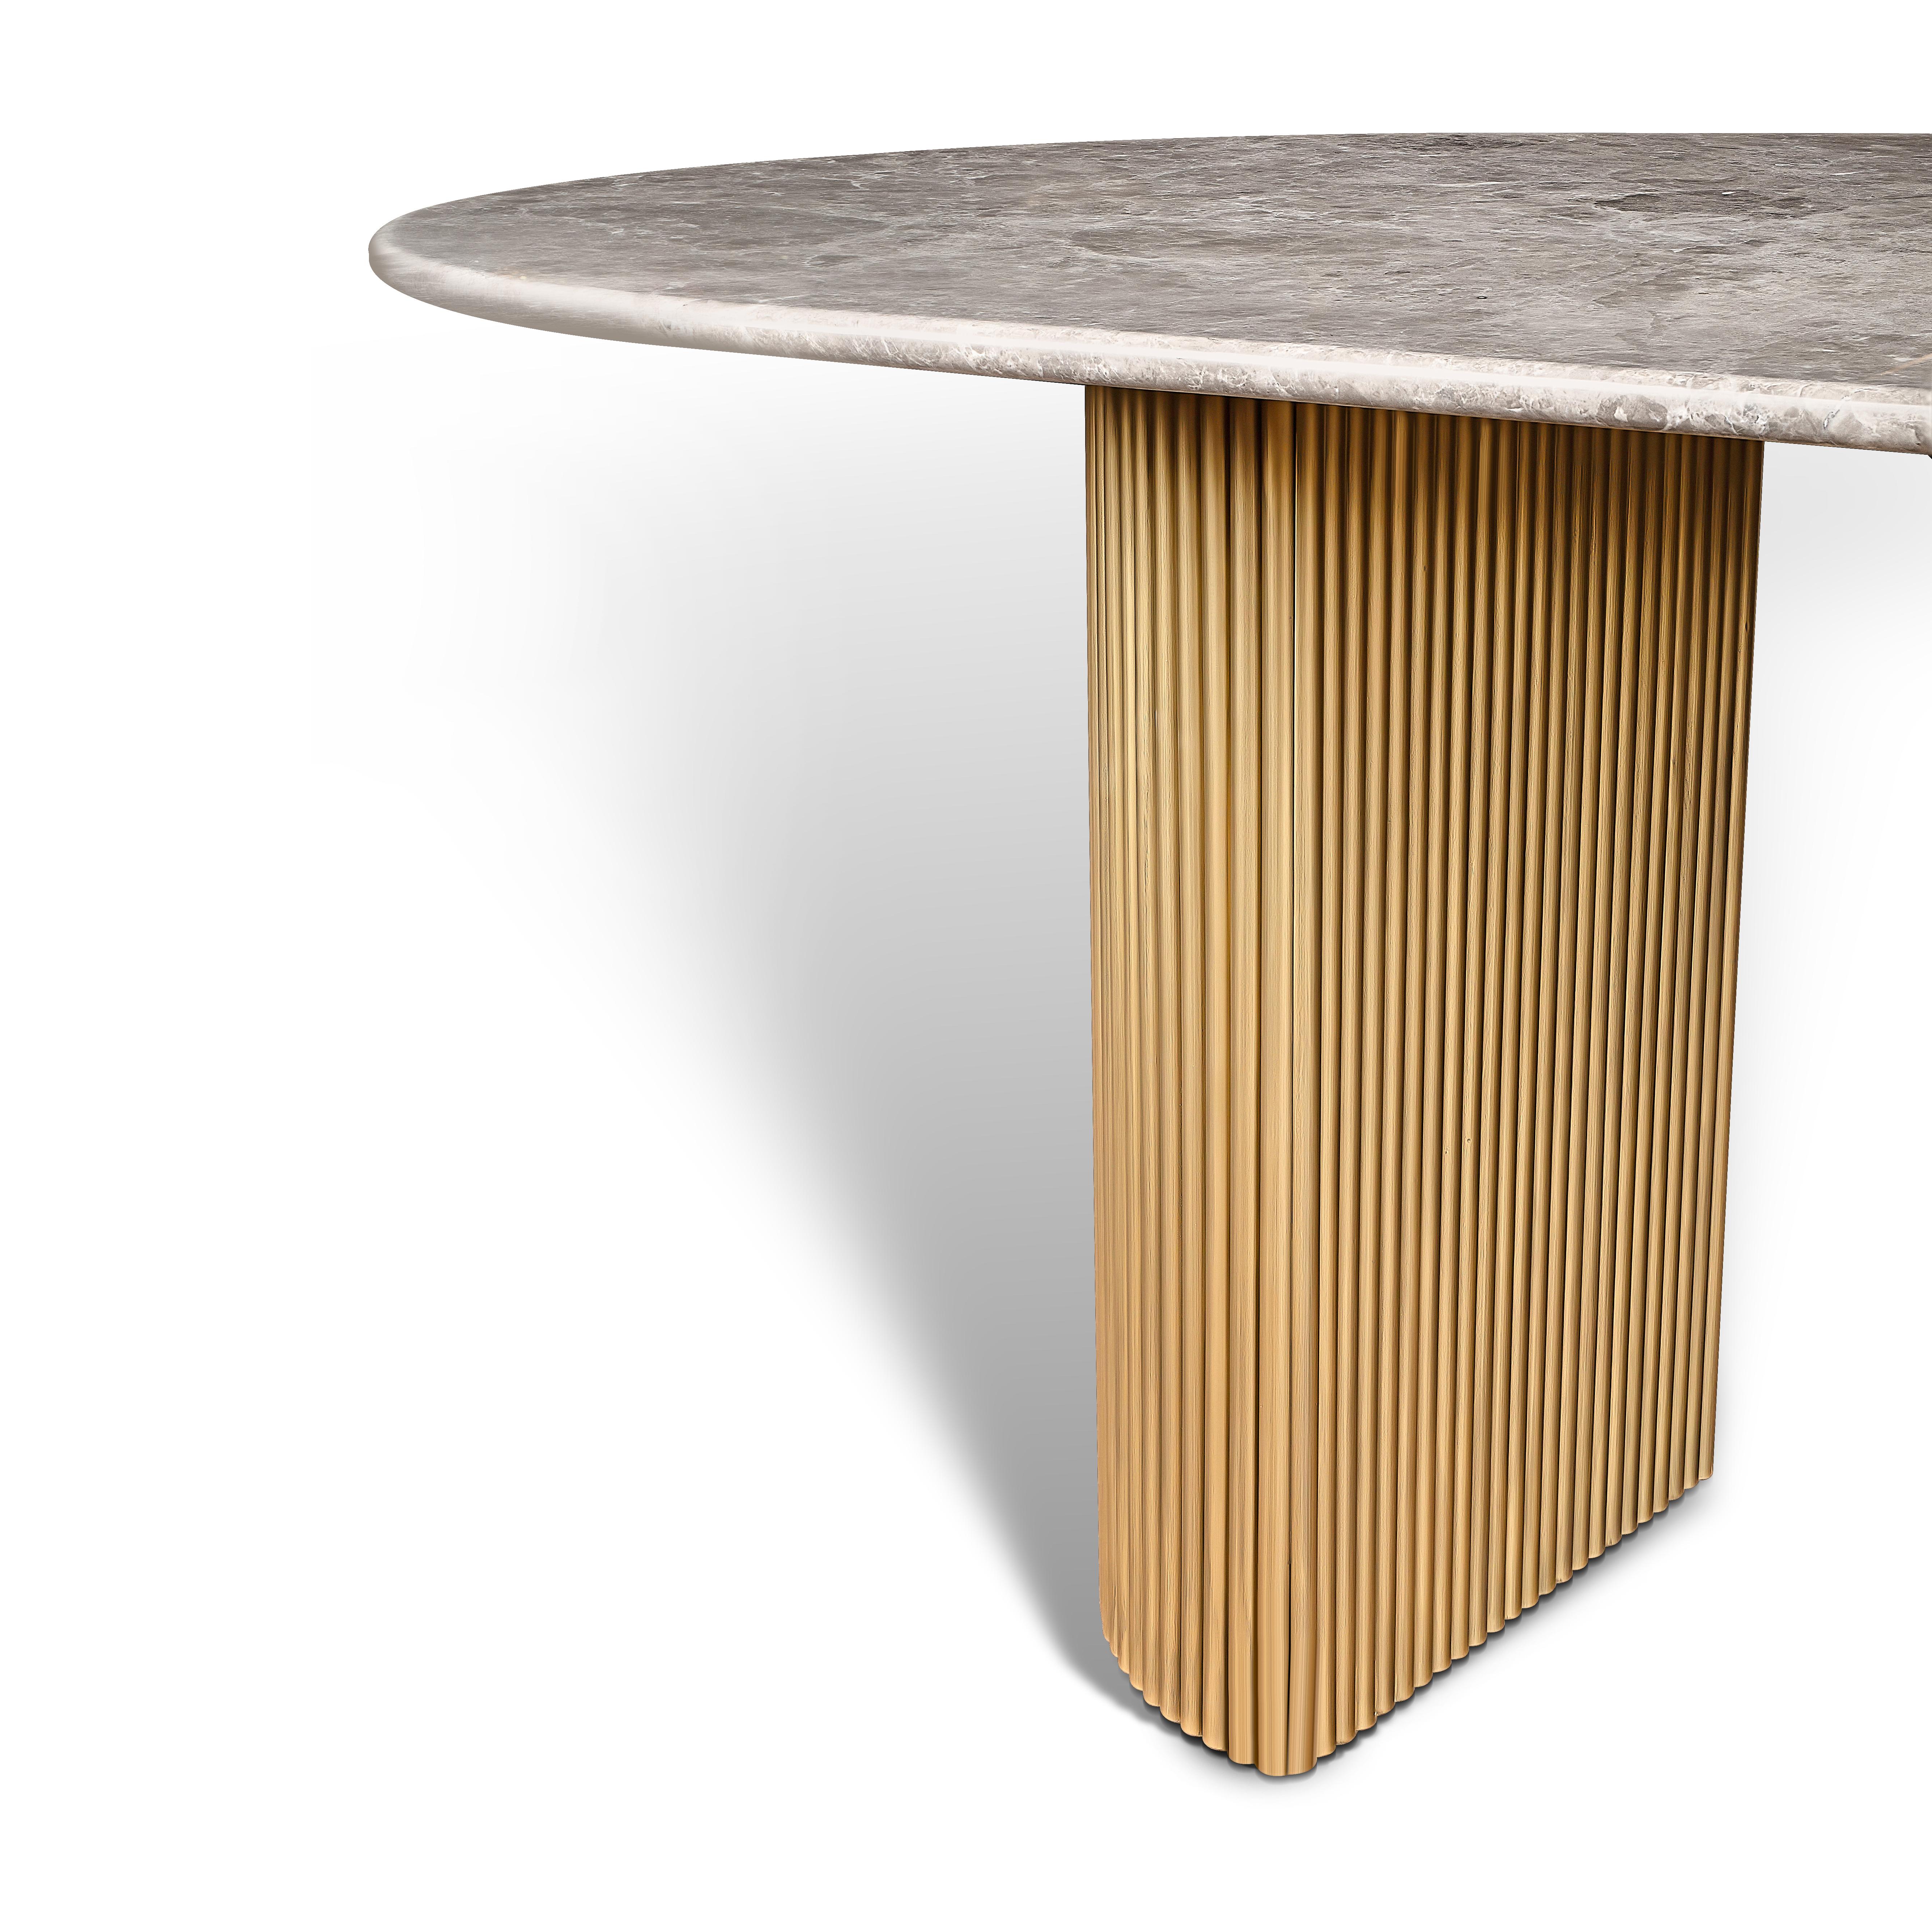 Fabriquée à la perfection, notre table en marbre avec pieds en bois allie élégance et fonctionnalité en toute transparence. La luxueuse surface en marbre respire la sophistication, tandis que les solides pieds en bois apportent stabilité et charme.